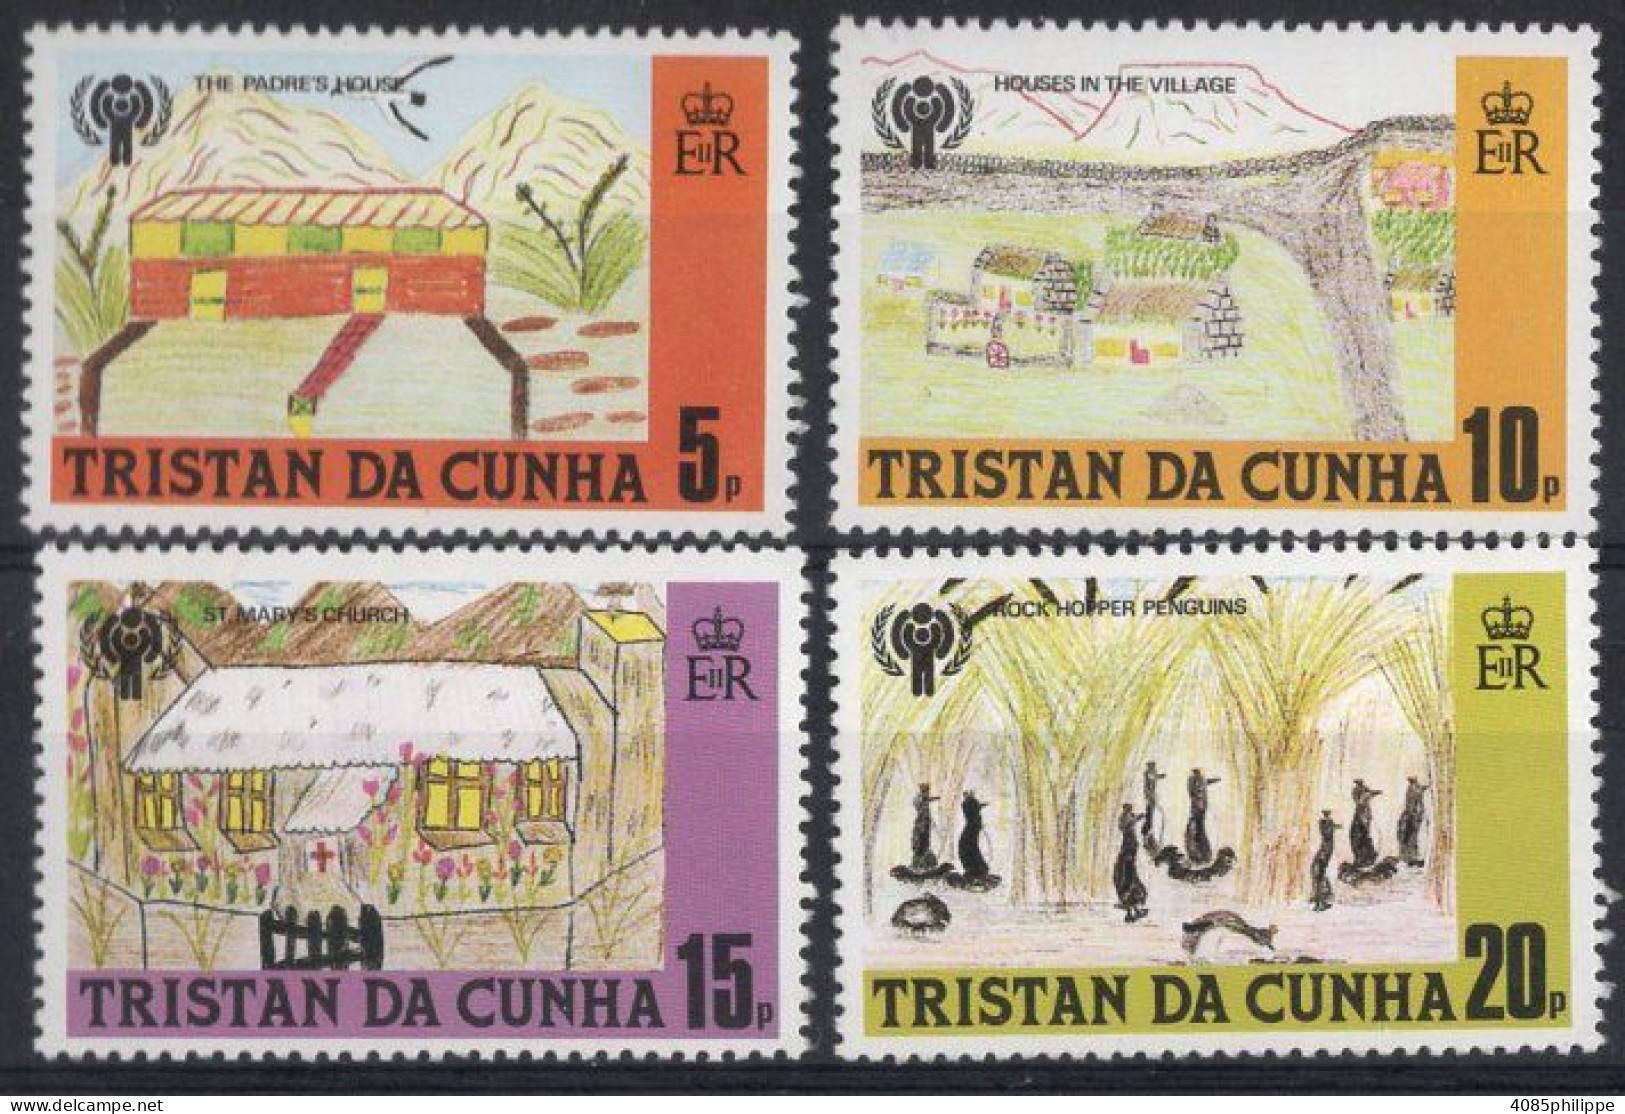 TRISTAN DA CUNHA  Timbres-Poste N°263* à 266* Neufs Charnières TB Cote : 2.75€ - Tristan Da Cunha